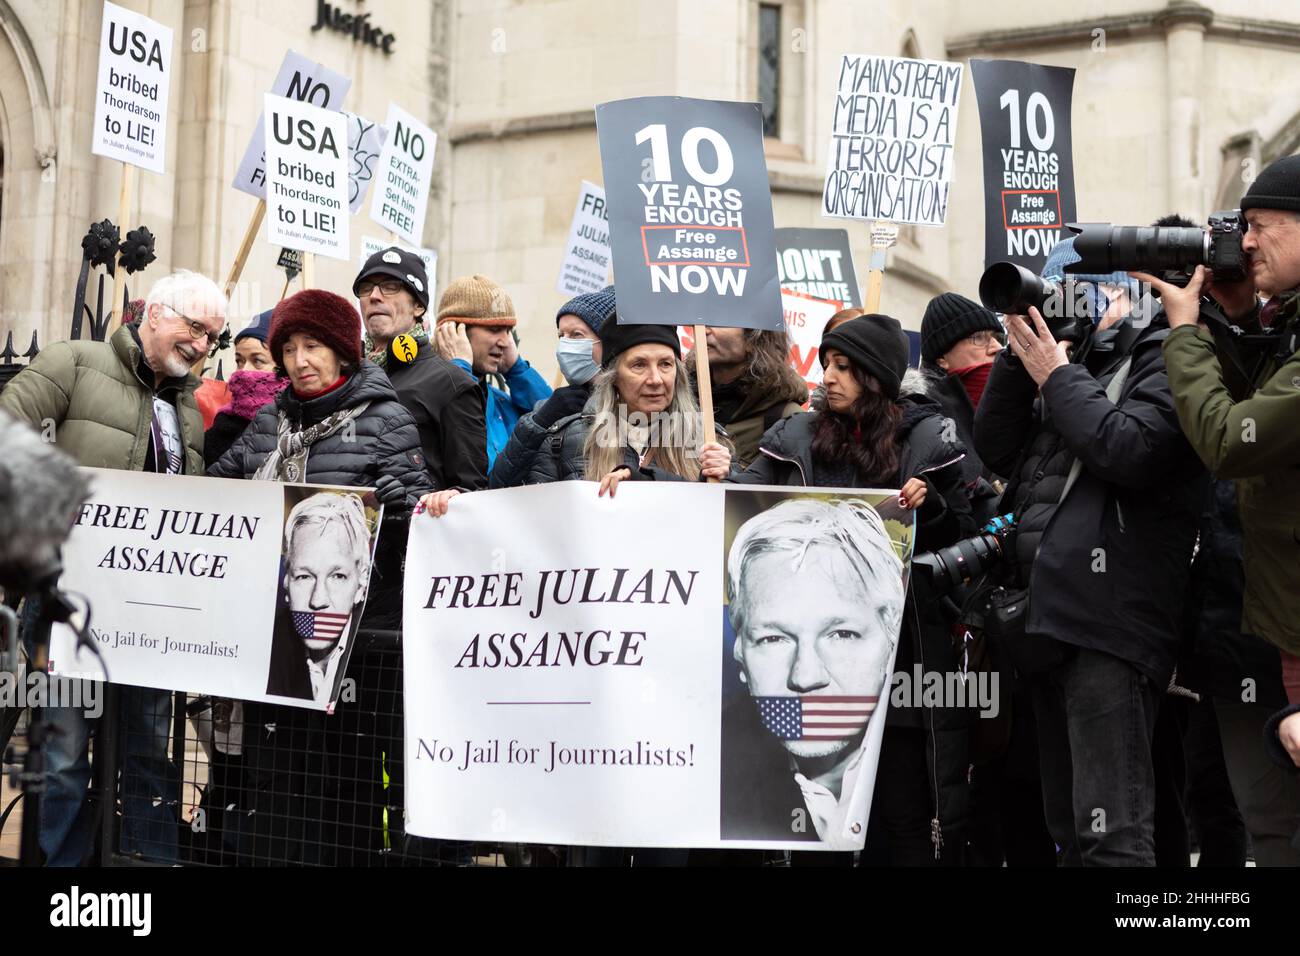 Die Anhänger von Julian Assange sahen ein Banner mit der Aufschrift „befreit Julian Assange. Kein Gefängnis für Journalisten!“ Und Plakate mit der Aufschrift „10 Jahre genug. Free Assange Now!'.der britische Oberste Gerichtshof hat Julian Assange die Erlaubnis erteilt, seine Berufung beim Obersten Gerichtshof des Vereinigten Königreichs einzulegen, weil der Fall wichtige rechtliche Aspekte aufwarf, die für die breite Öffentlichkeit von rechtlicher Bedeutung sind. Stella Moris, die Verlobte von Julian Assange, erschien vor den königlichen Gerichtshöfen, um eine Erklärung abzugeben, in der die jüngste Entscheidung bekanntgegeben wurde. Im Dezember 2021 entschied der Oberste Gerichtshof, dass Assange an die USA, wo er sich befand, ausgeliefert werden kann Stockfoto